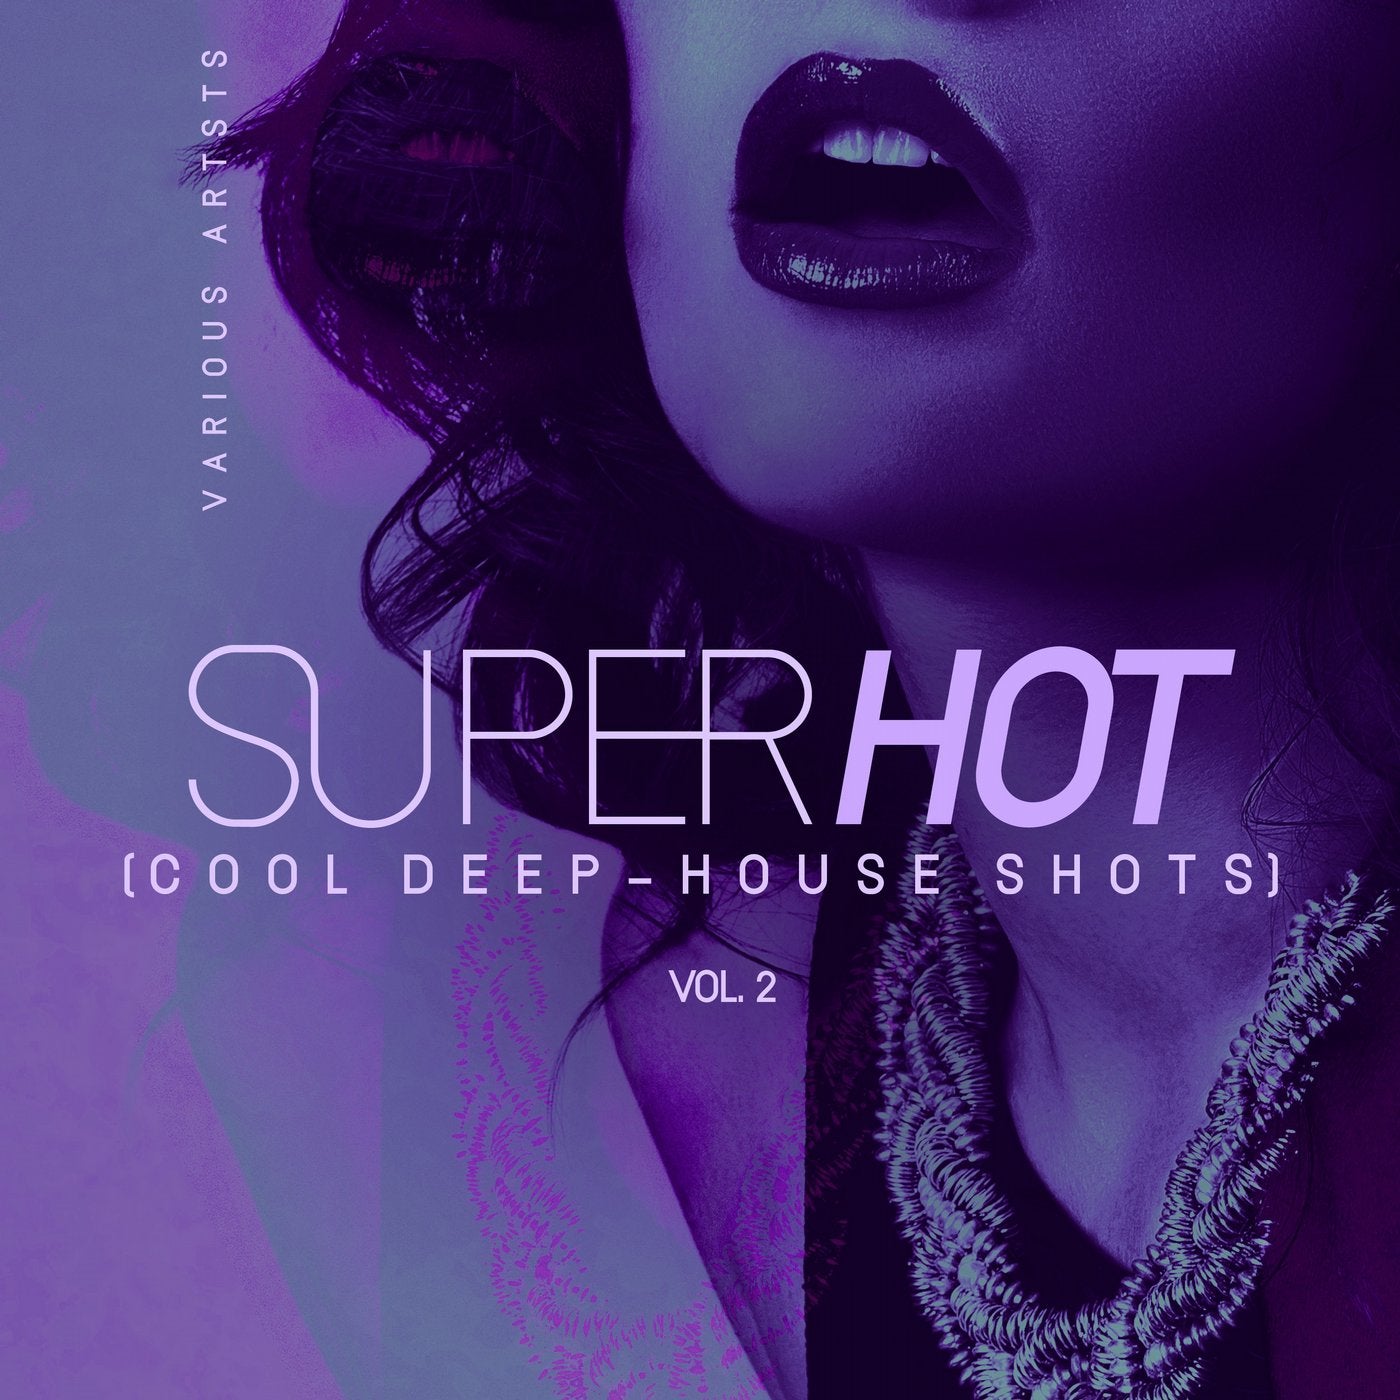 Super Hot, Vol. 2 (Cool Deep-House Shots)